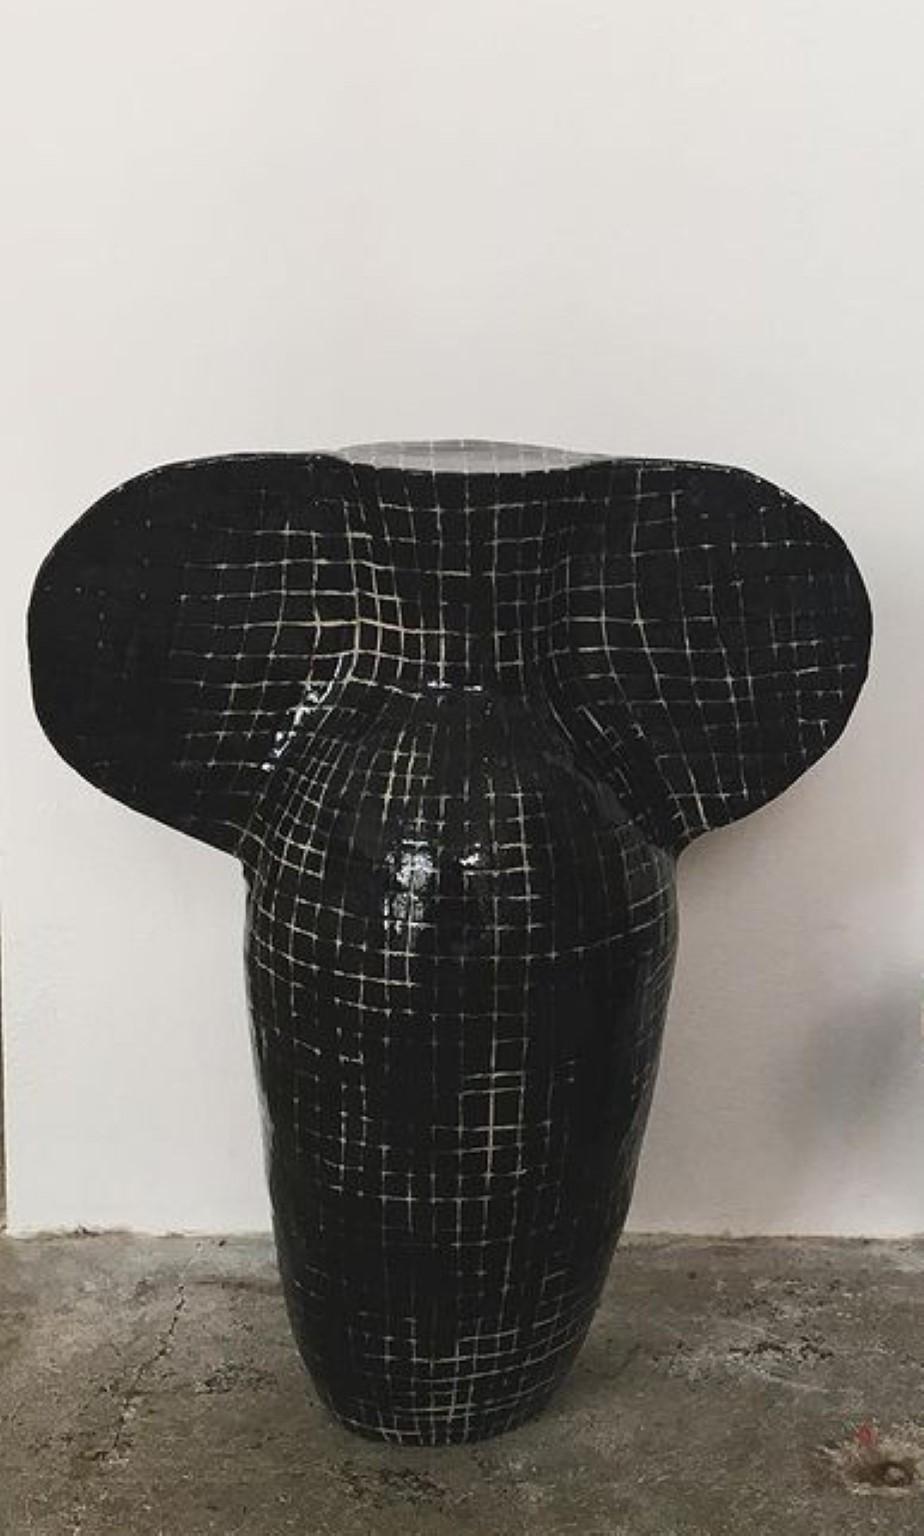 Skulptur-Vase mit Gitter von Maria Lenskjold
Abmessungen: H35 x Durchmesser 40 cm.
MATERIALIEN: Steingut

Maria Lenskjolds Praxis basiert auf einem konsequenten Prinzip: die gängigen bildkünstlerischen Kategorien zu untersuchen, mit ihnen zu